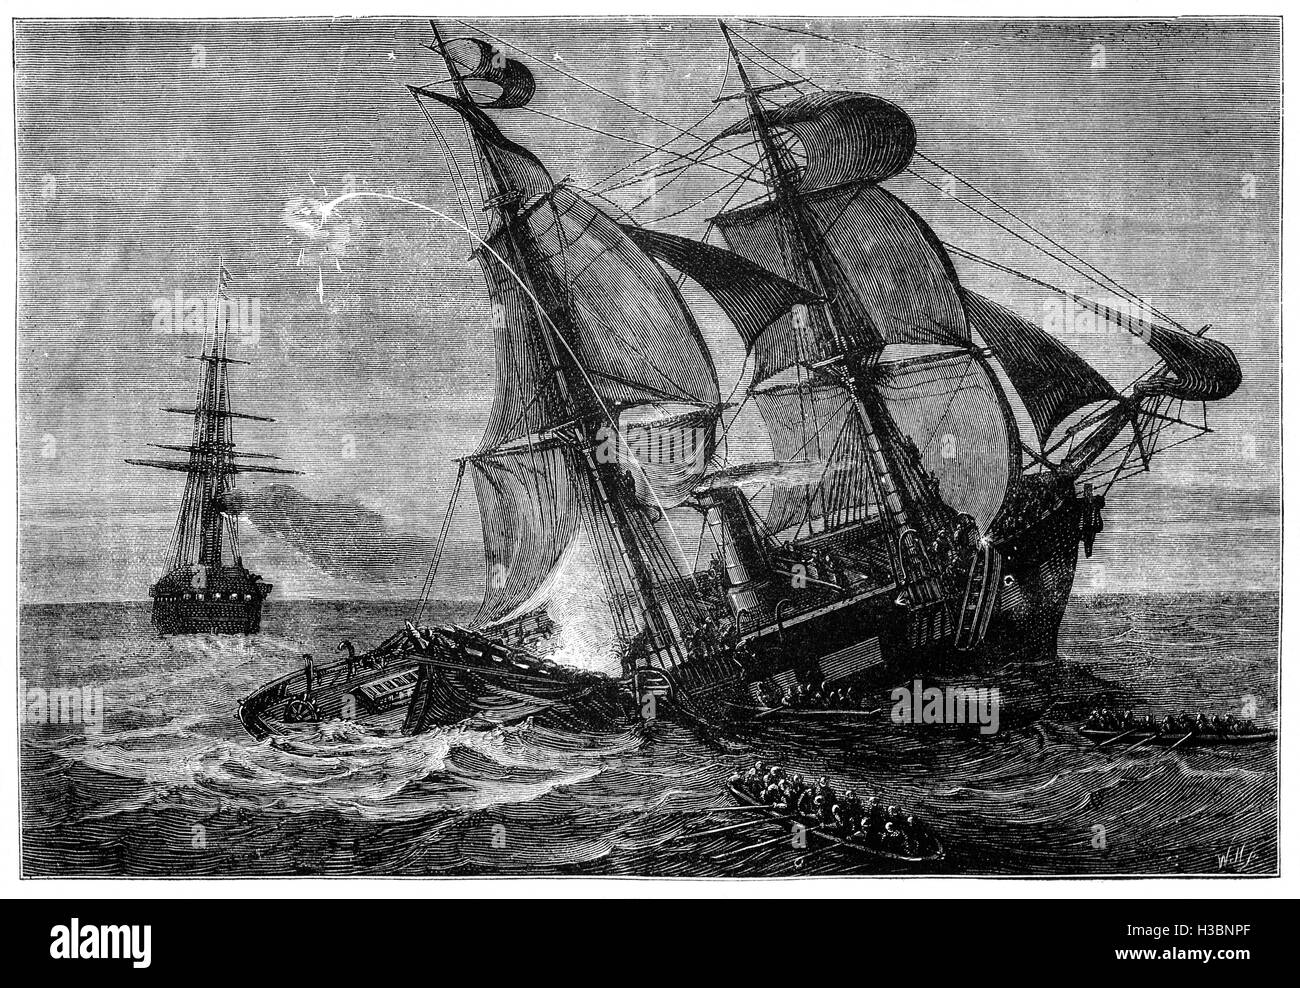 Die USS "Oneida" war eine Schraube Sloop des Krieges in der United States Navy. Sie hing an der Asiatic Squadron von 1867 – 1870. Sie sank nach Kollision mit dem britischen Dampfer "Bombay" im Jahre 1870 außerhalb von Yokohama, Japan. Stockfoto